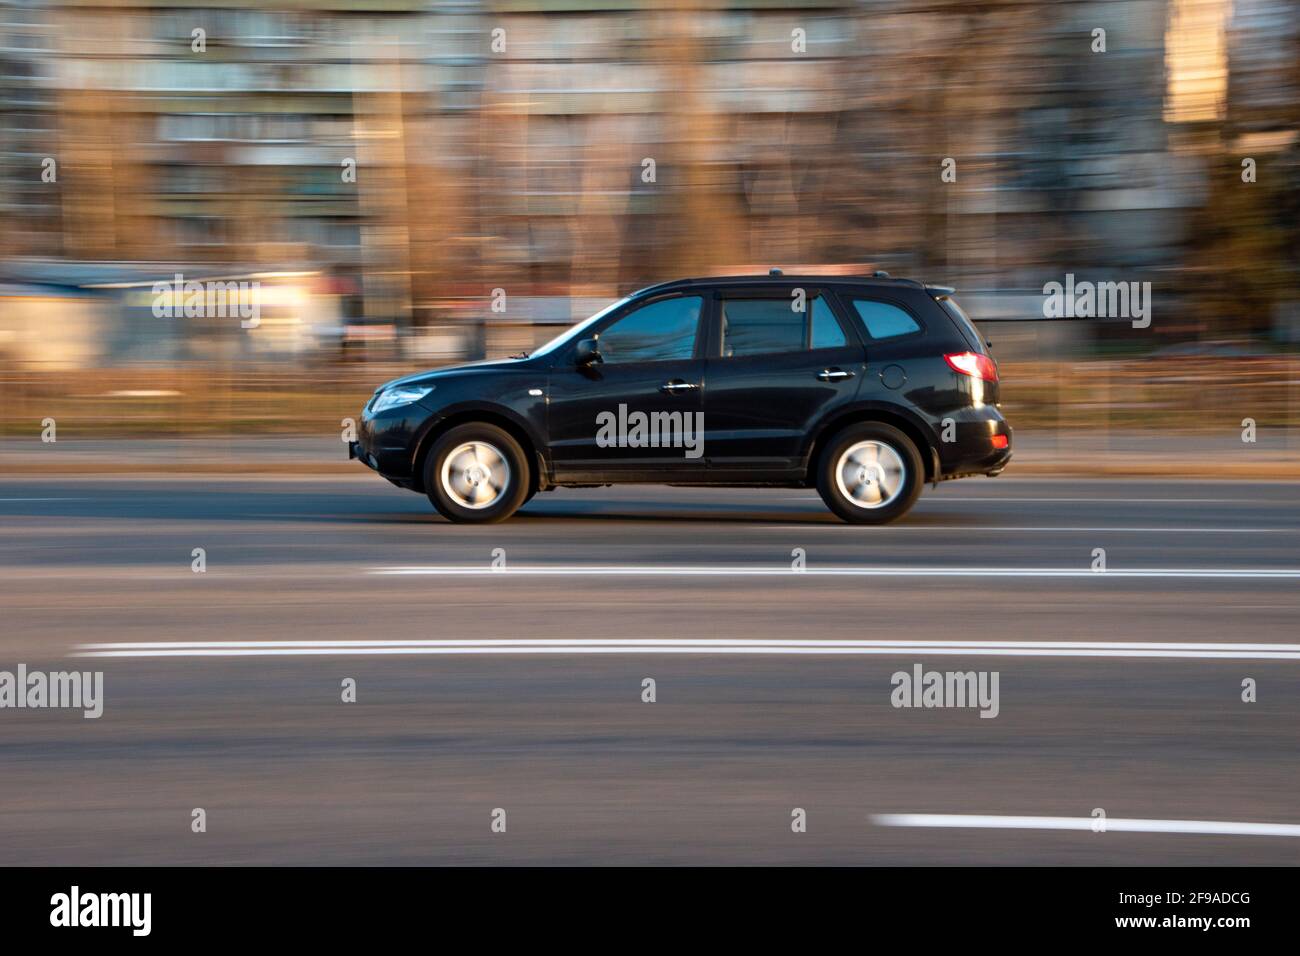 Ukraine, Kiew - 2. März 2021: Schwarzer Toyota FJ Cruiser Auto bewegt sich  auf der Straße Stockfotografie - Alamy